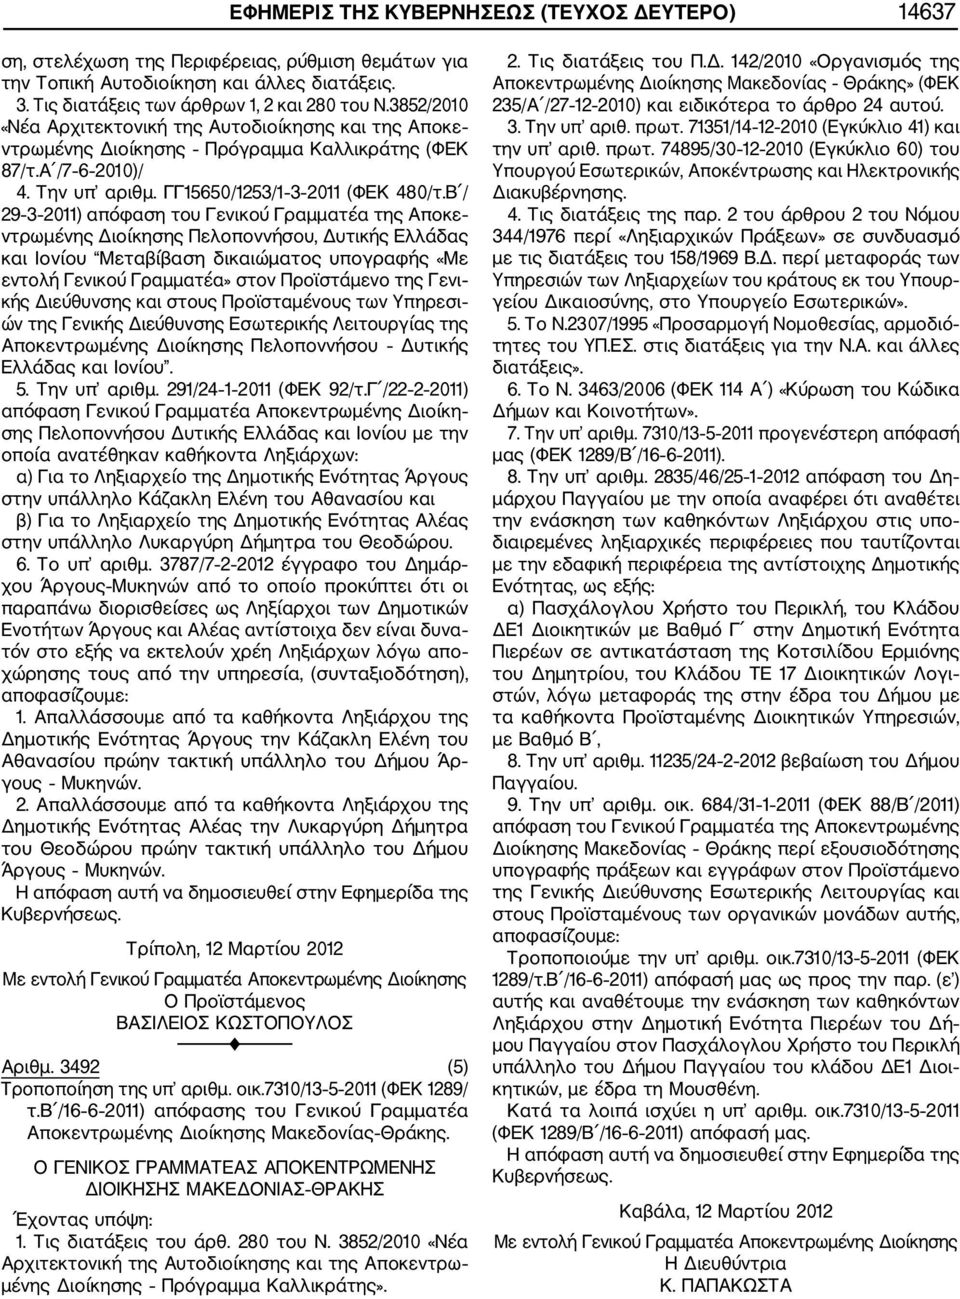 Β / 29 3 2011) απόφαση του Γενικού Γραμματέα της Αποκε ντρωμένης Διοίκησης Πελοποννήσου, Δυτικής Ελλάδας και Ιονίου Μεταβίβαση δικαιώματος υπογραφής «Με εντολή Γενικού Γραμματέα» στον Προϊστάμενο της